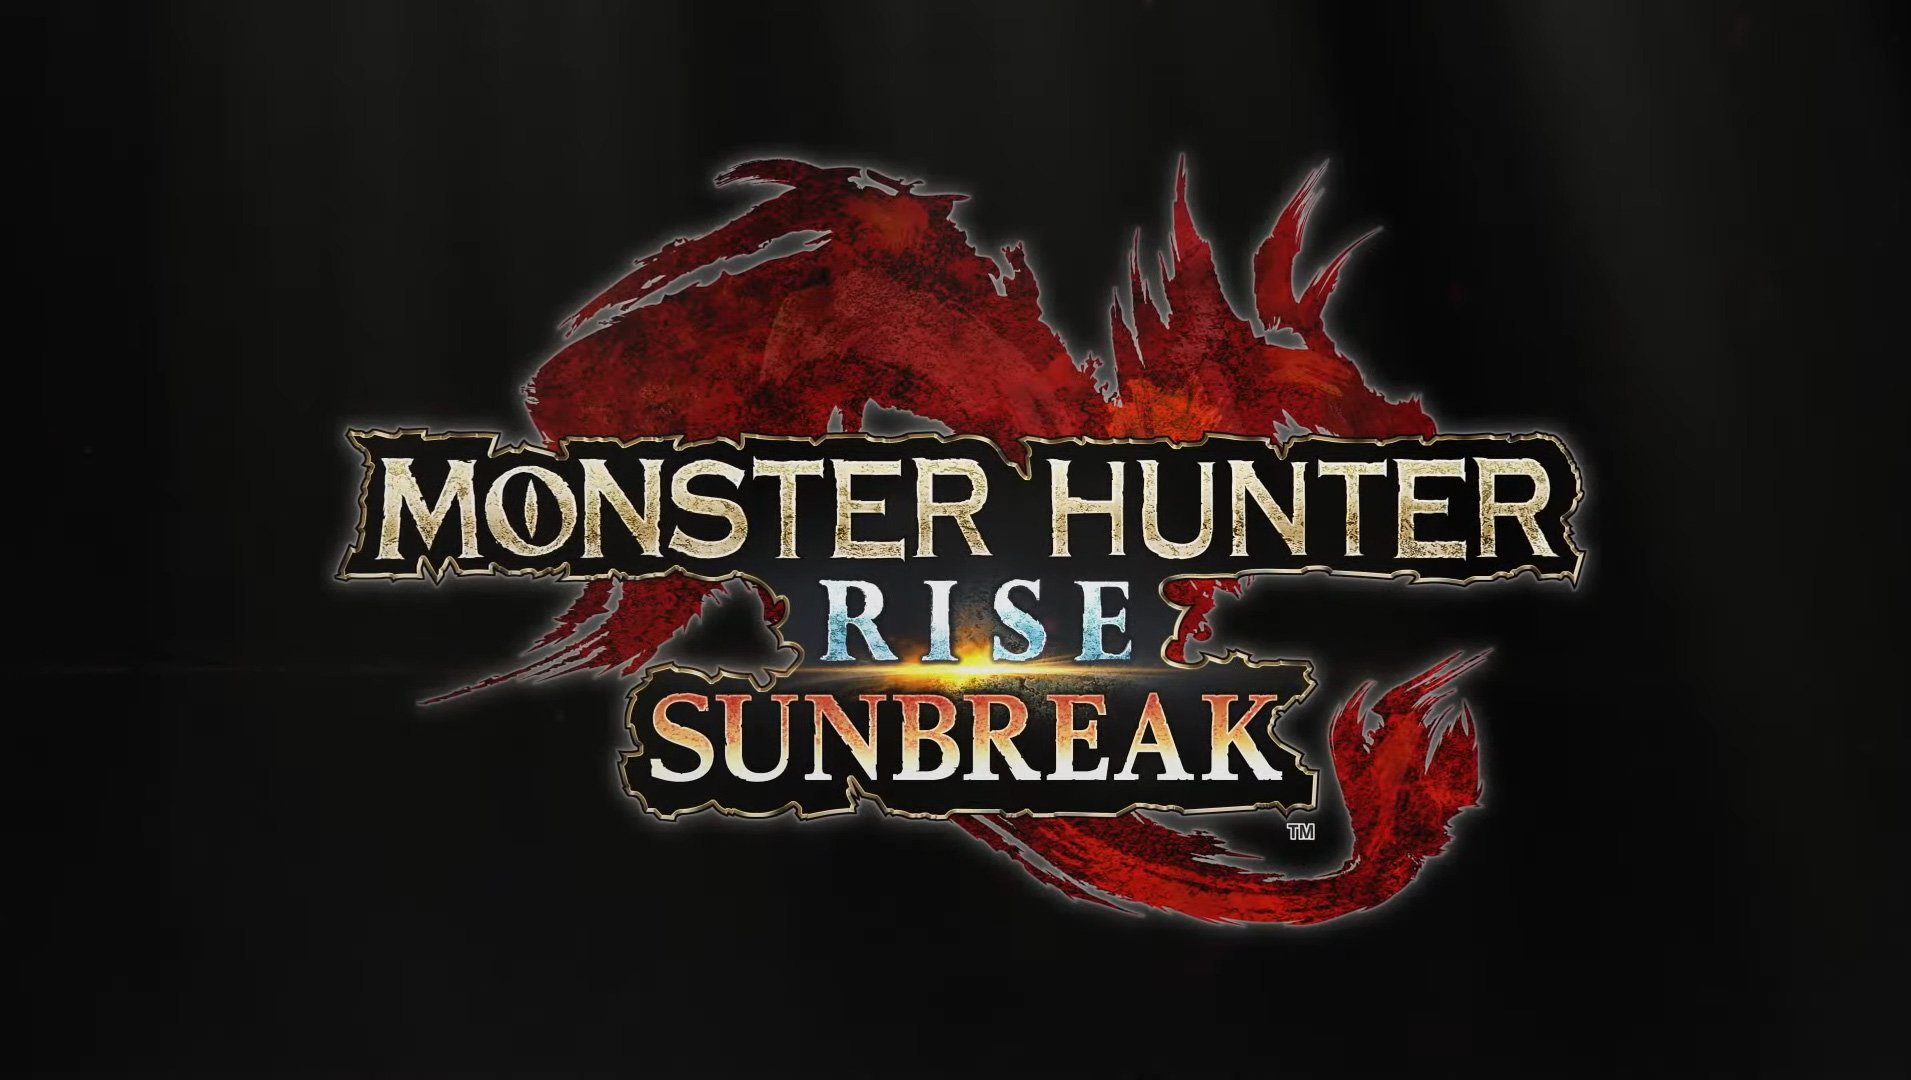 Hunter monster DnD 5e: